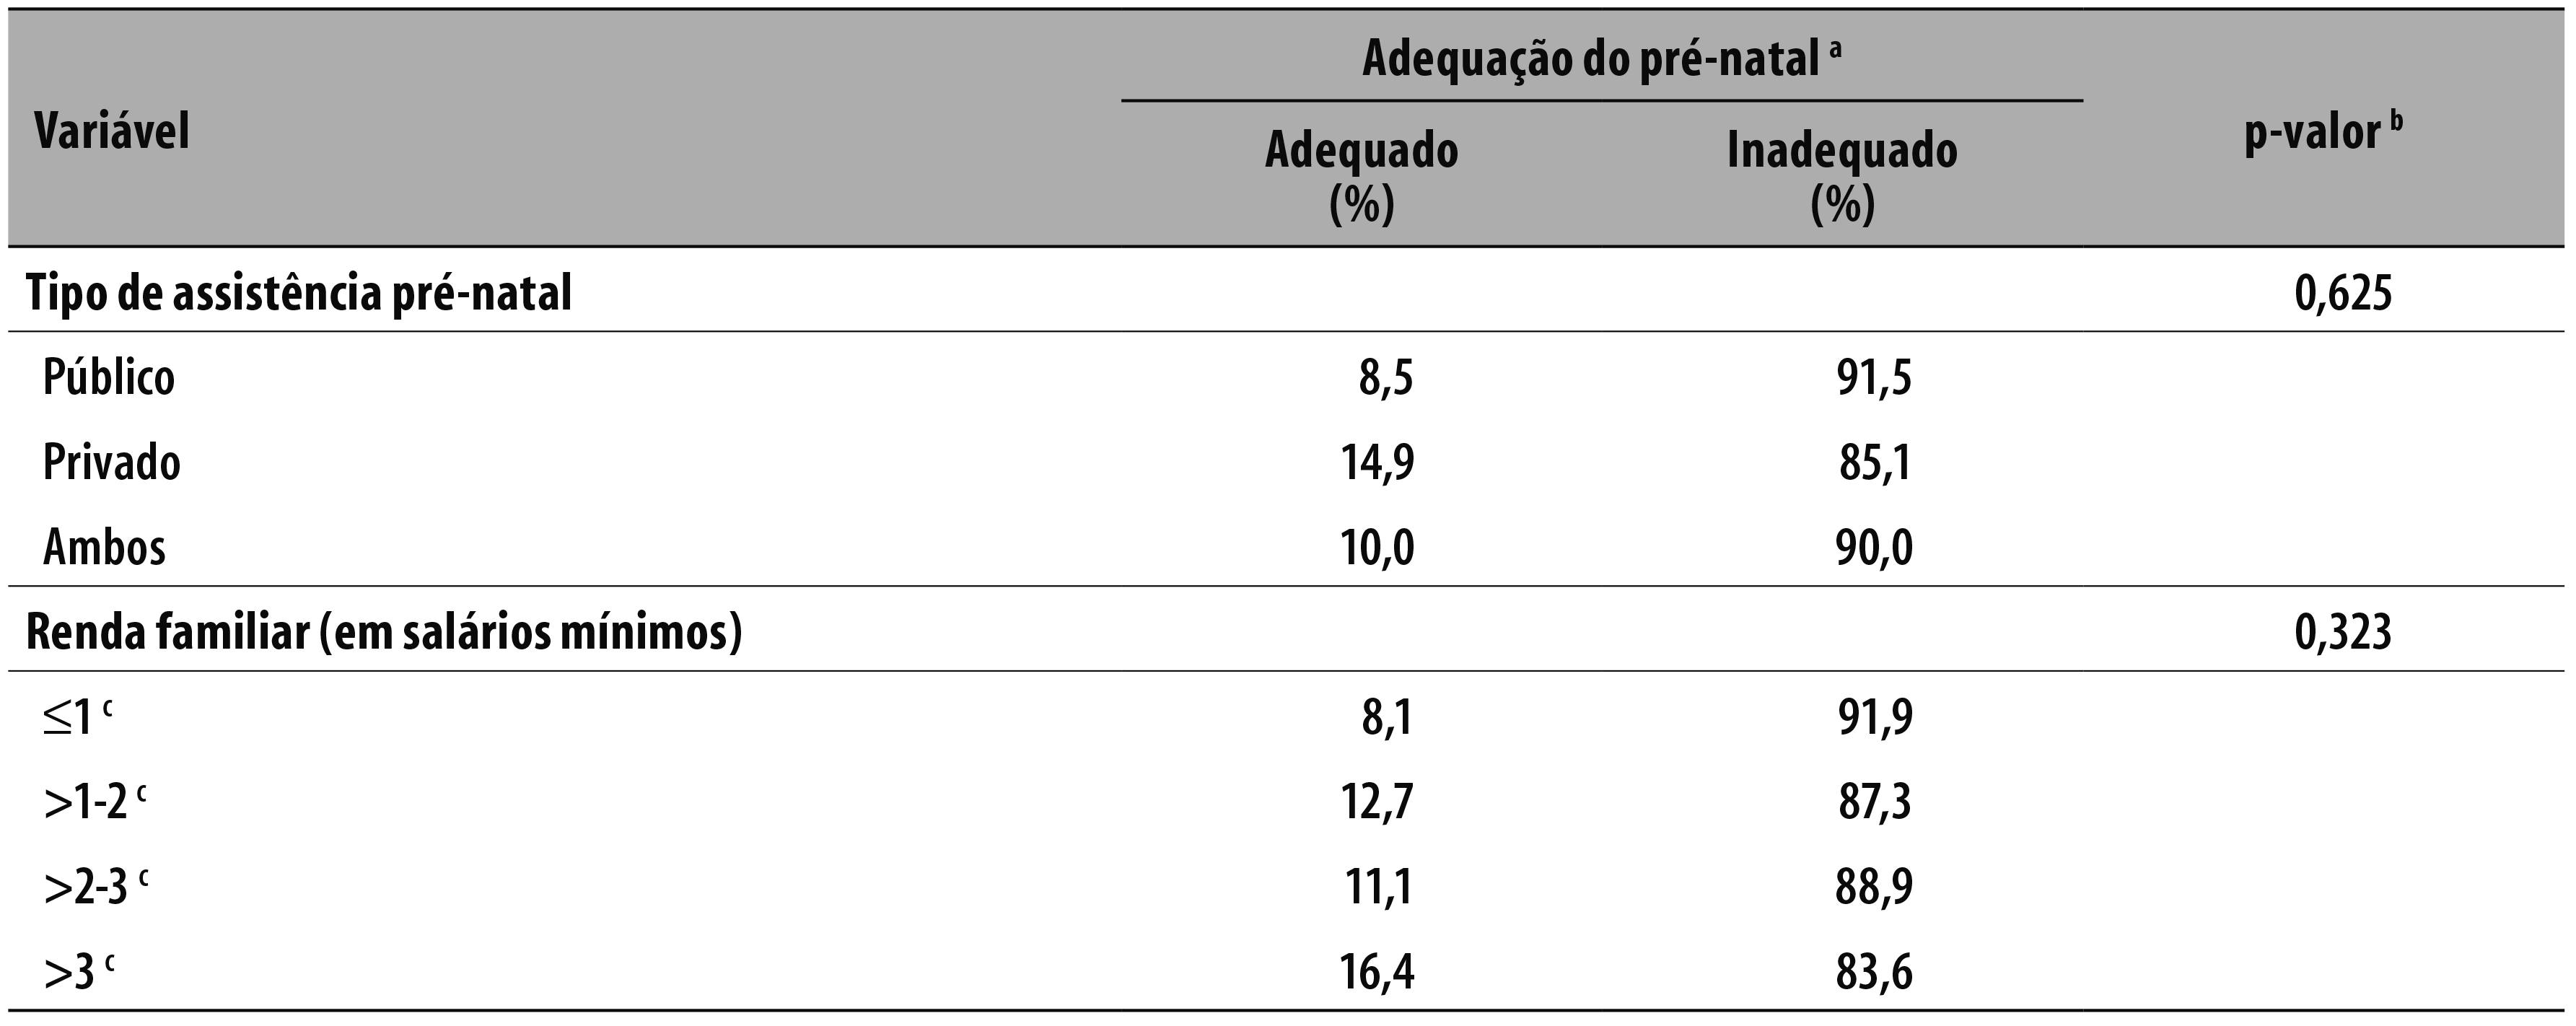 Avaliação da adequação do cuidado pré-natal segundo a renda familiar em  Aracaju, 2011